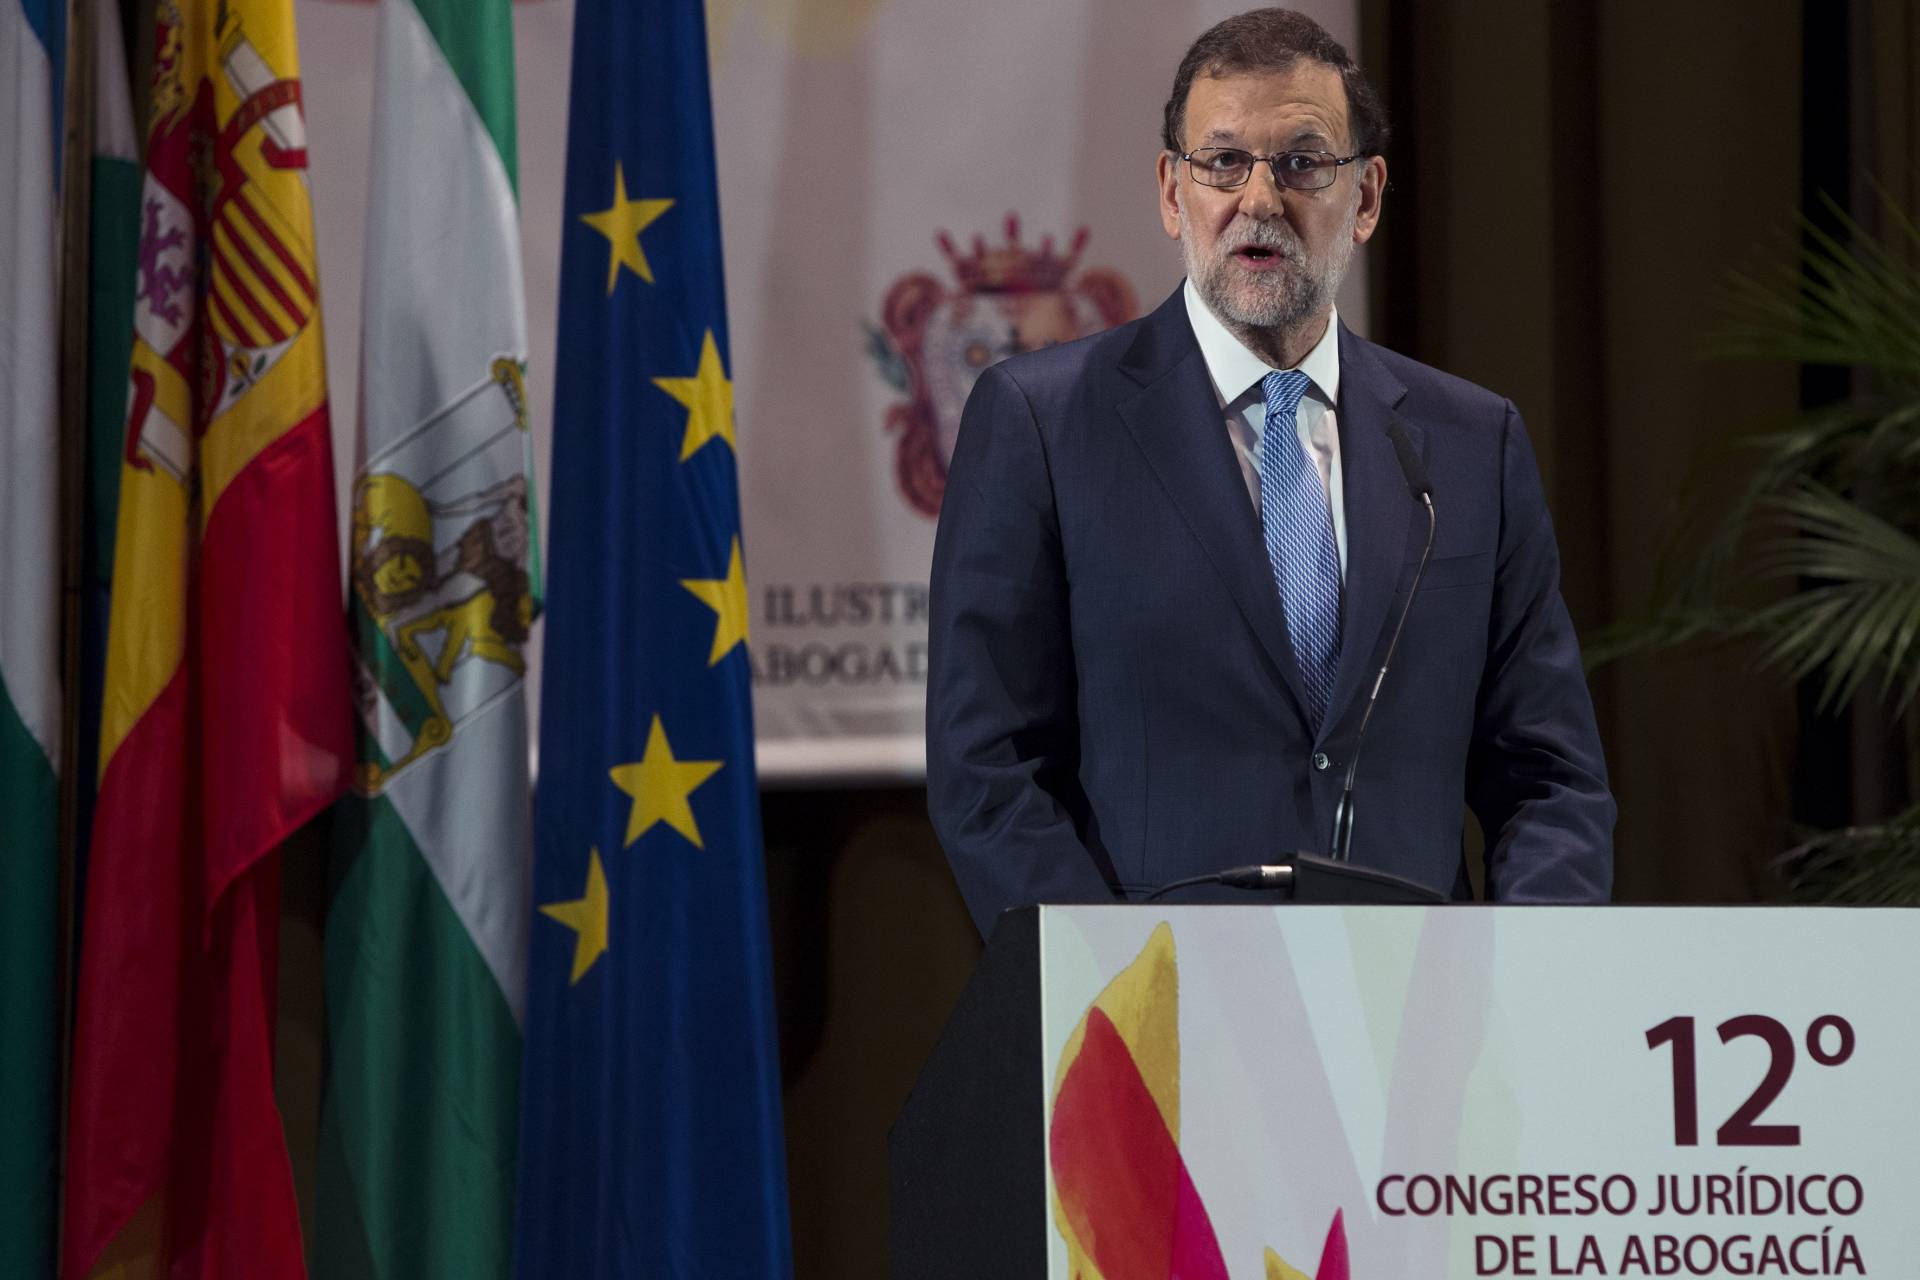 Rajoy prefería de socio de Gobierno al PSOE más que a Ciudadanos